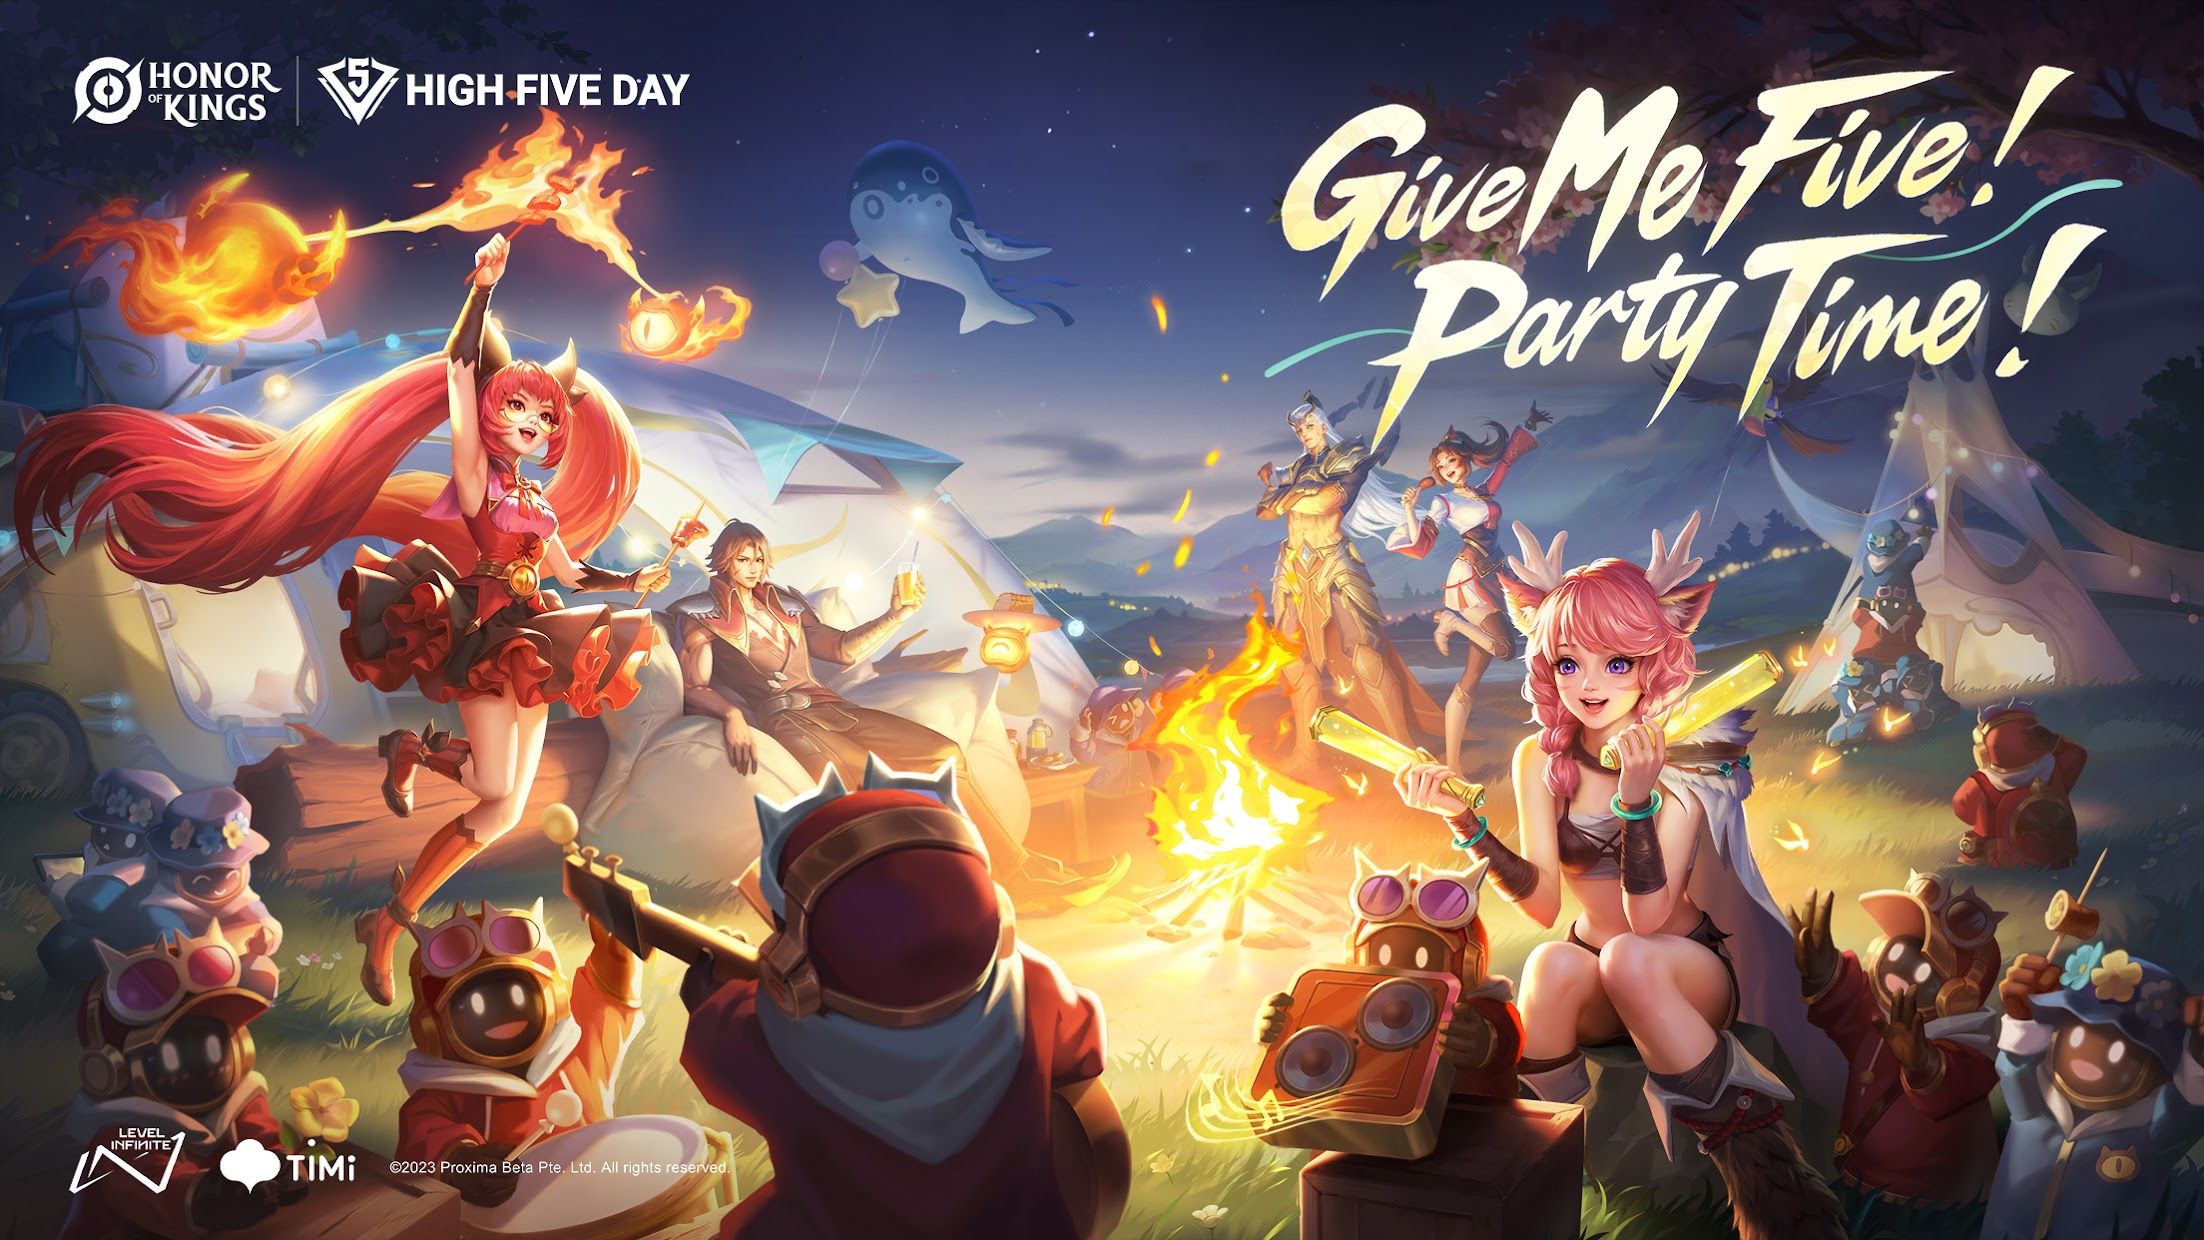 腾讯MOBA游戏《王者荣耀》拓展全球版图 预计6月登陆韩国、北美及欧洲等地区